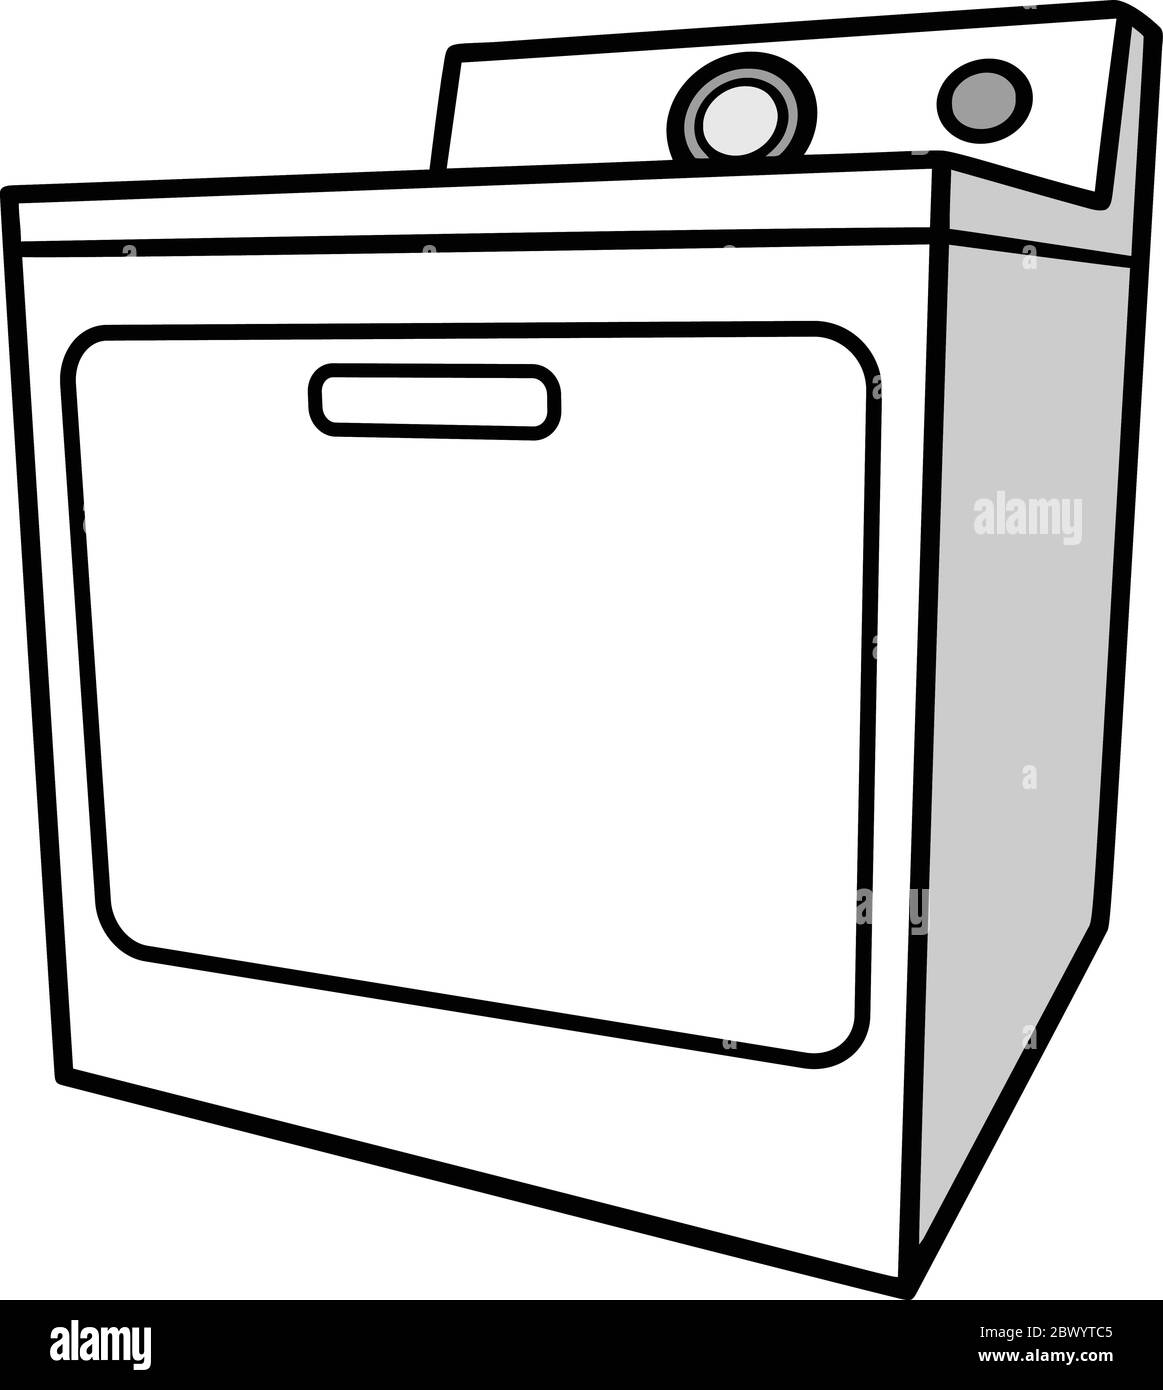 Asciugabiancheria - un'illustrazione del cartone animato di un asciugatore di asciugatrice. Illustrazione Vettoriale